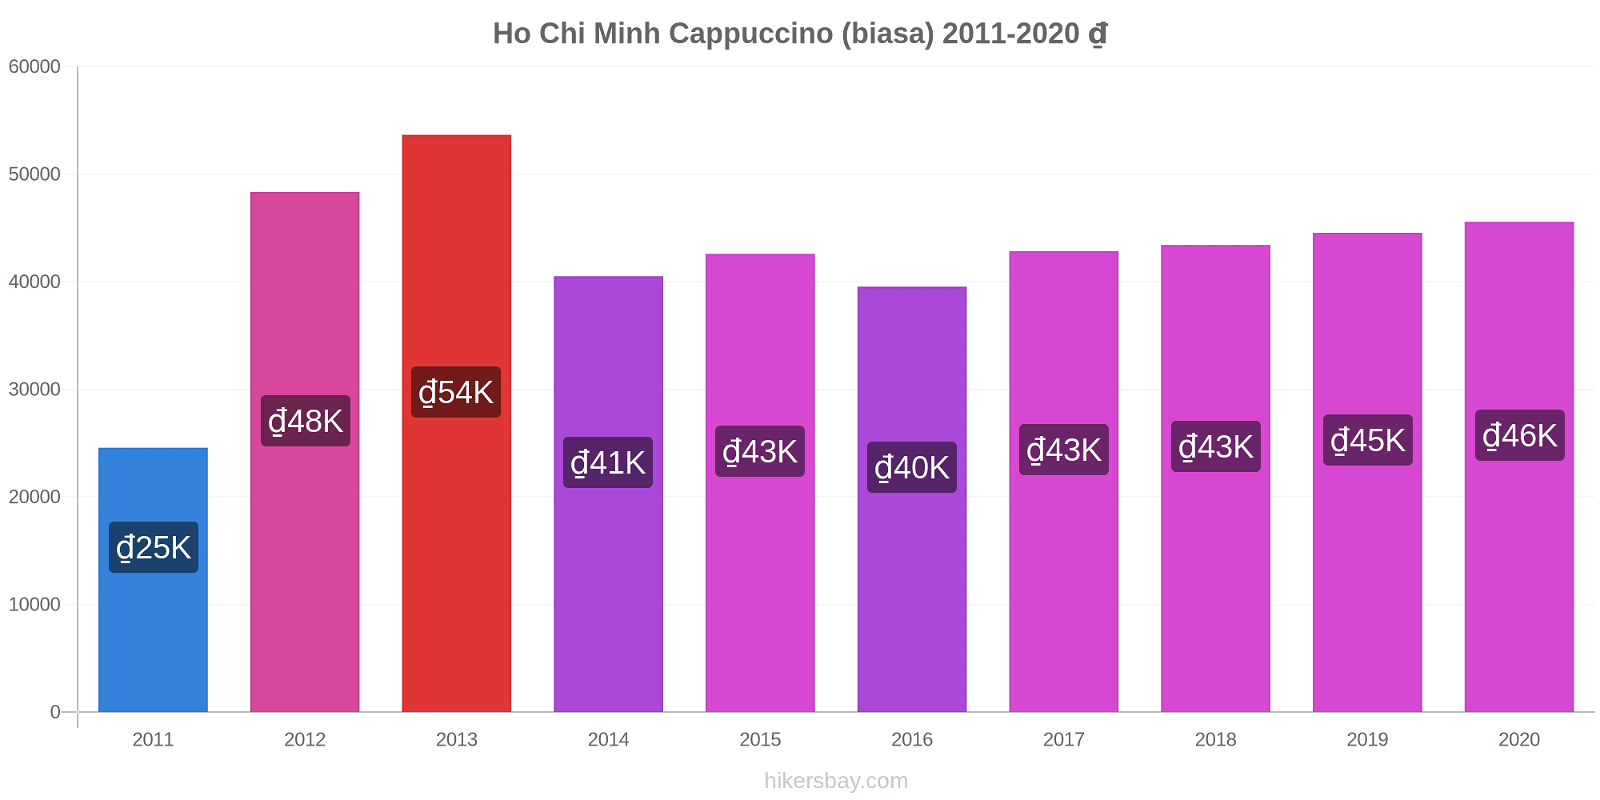 Ho Chi Minh perubahan harga Cappuccino (biasa) hikersbay.com